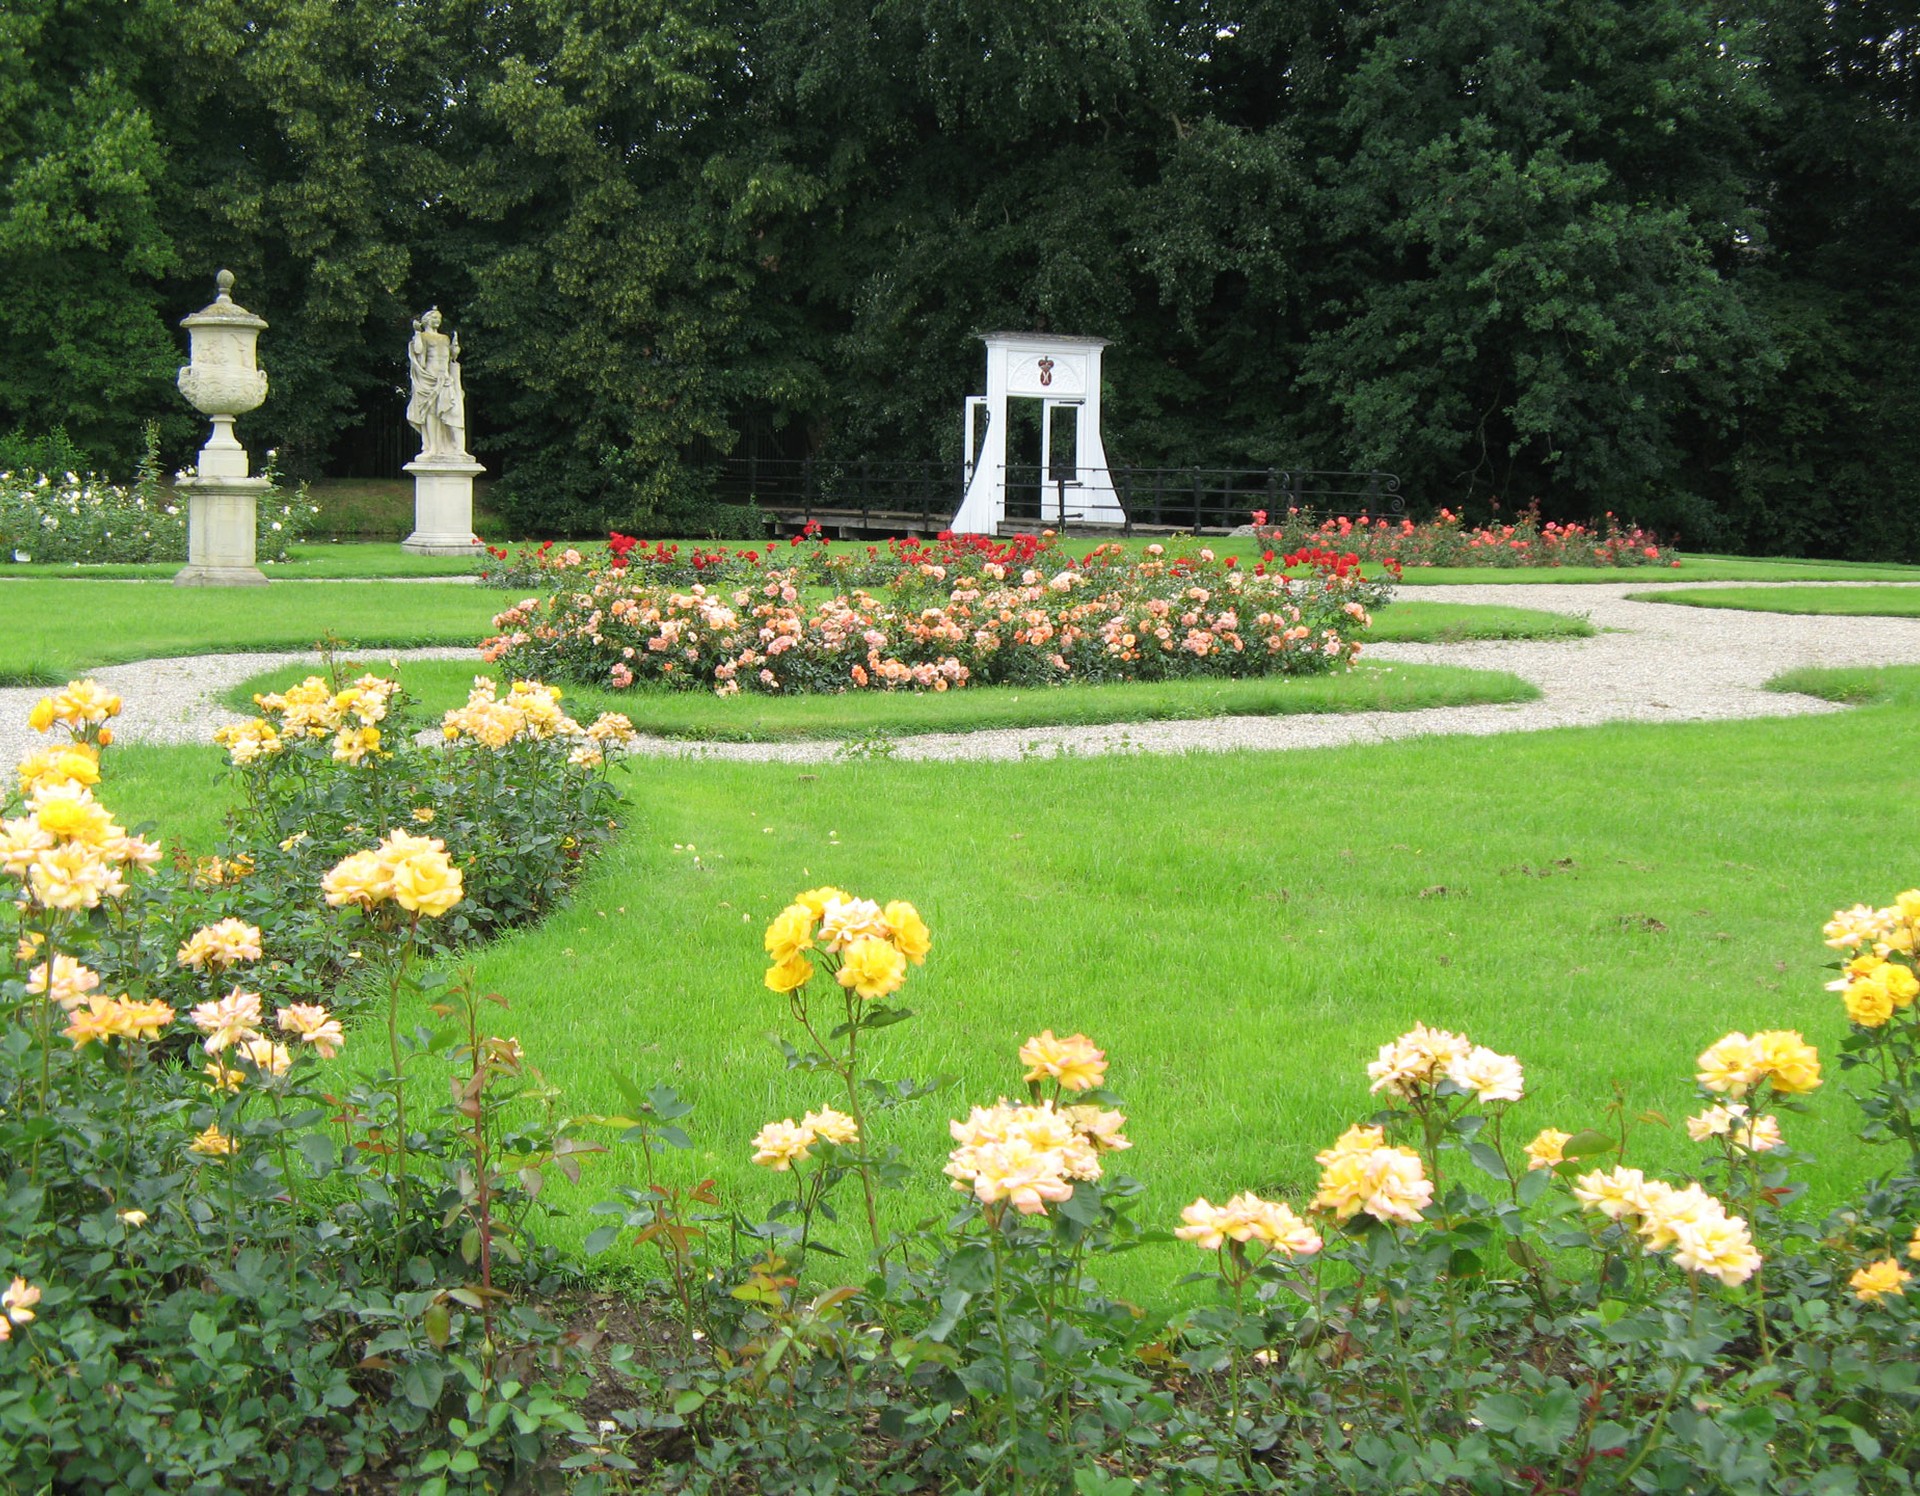 Der Barockgarten an der Wasserburg Anholt. Verziert wird der Garten durch verschiedenfarbige Rosensträucher. Auch zwei von mehreren barocken Skulpturen sind zu sehen.